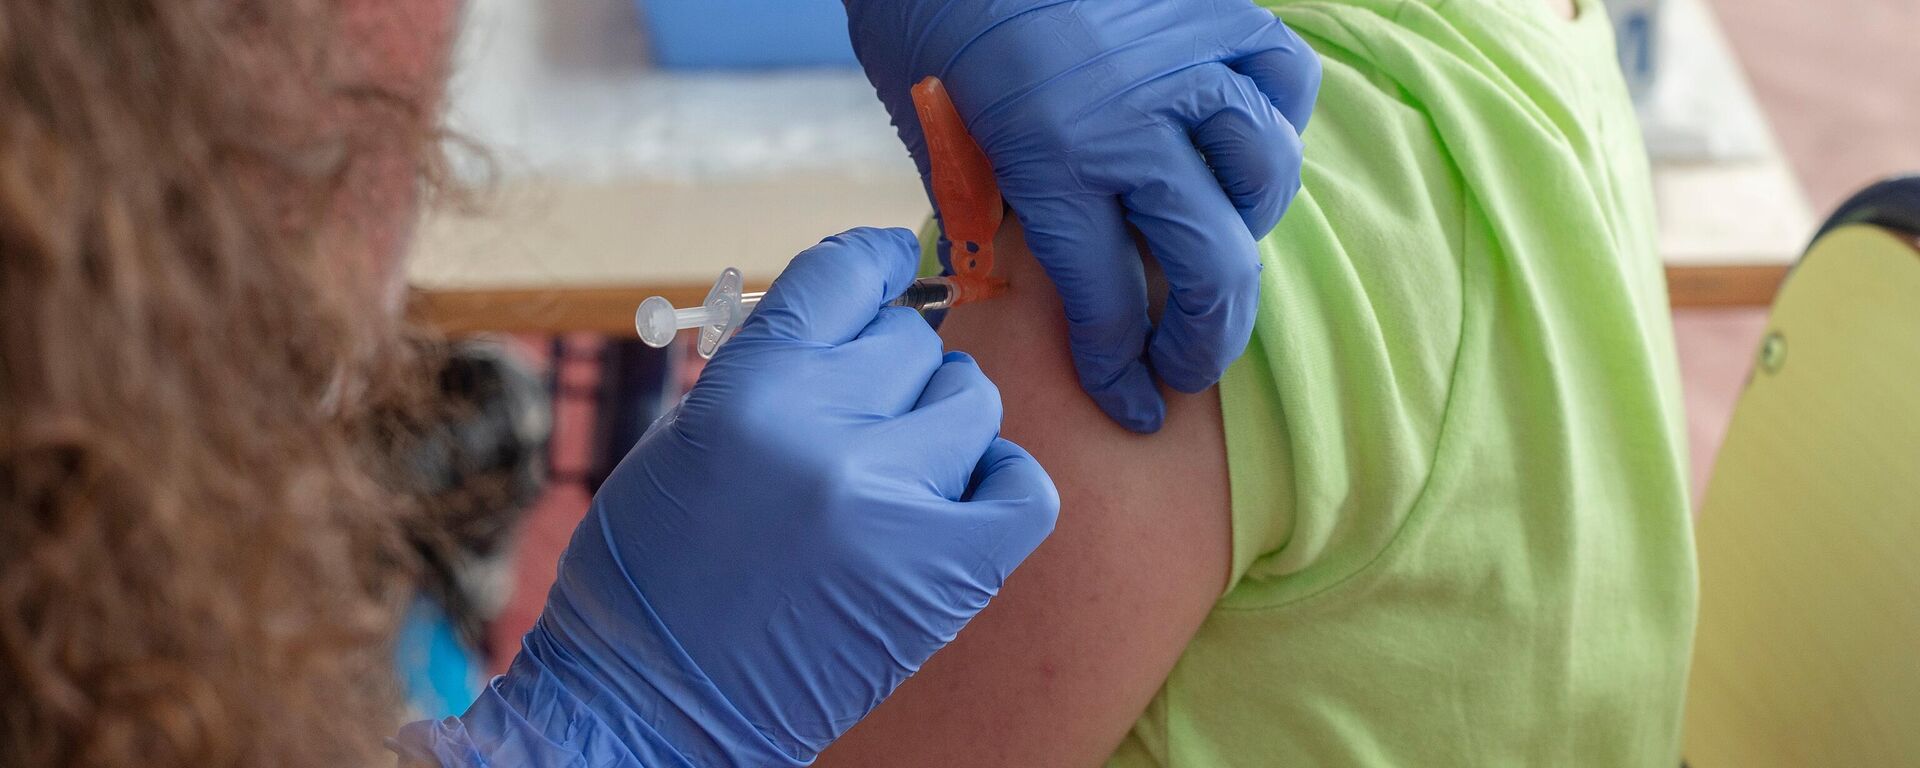 Un niño recibe la vacuna contra el Covid-19, en el CEIP Manel García Grau, a 13 de enero de 2022, - Sputnik Mundo, 1920, 04.07.2022